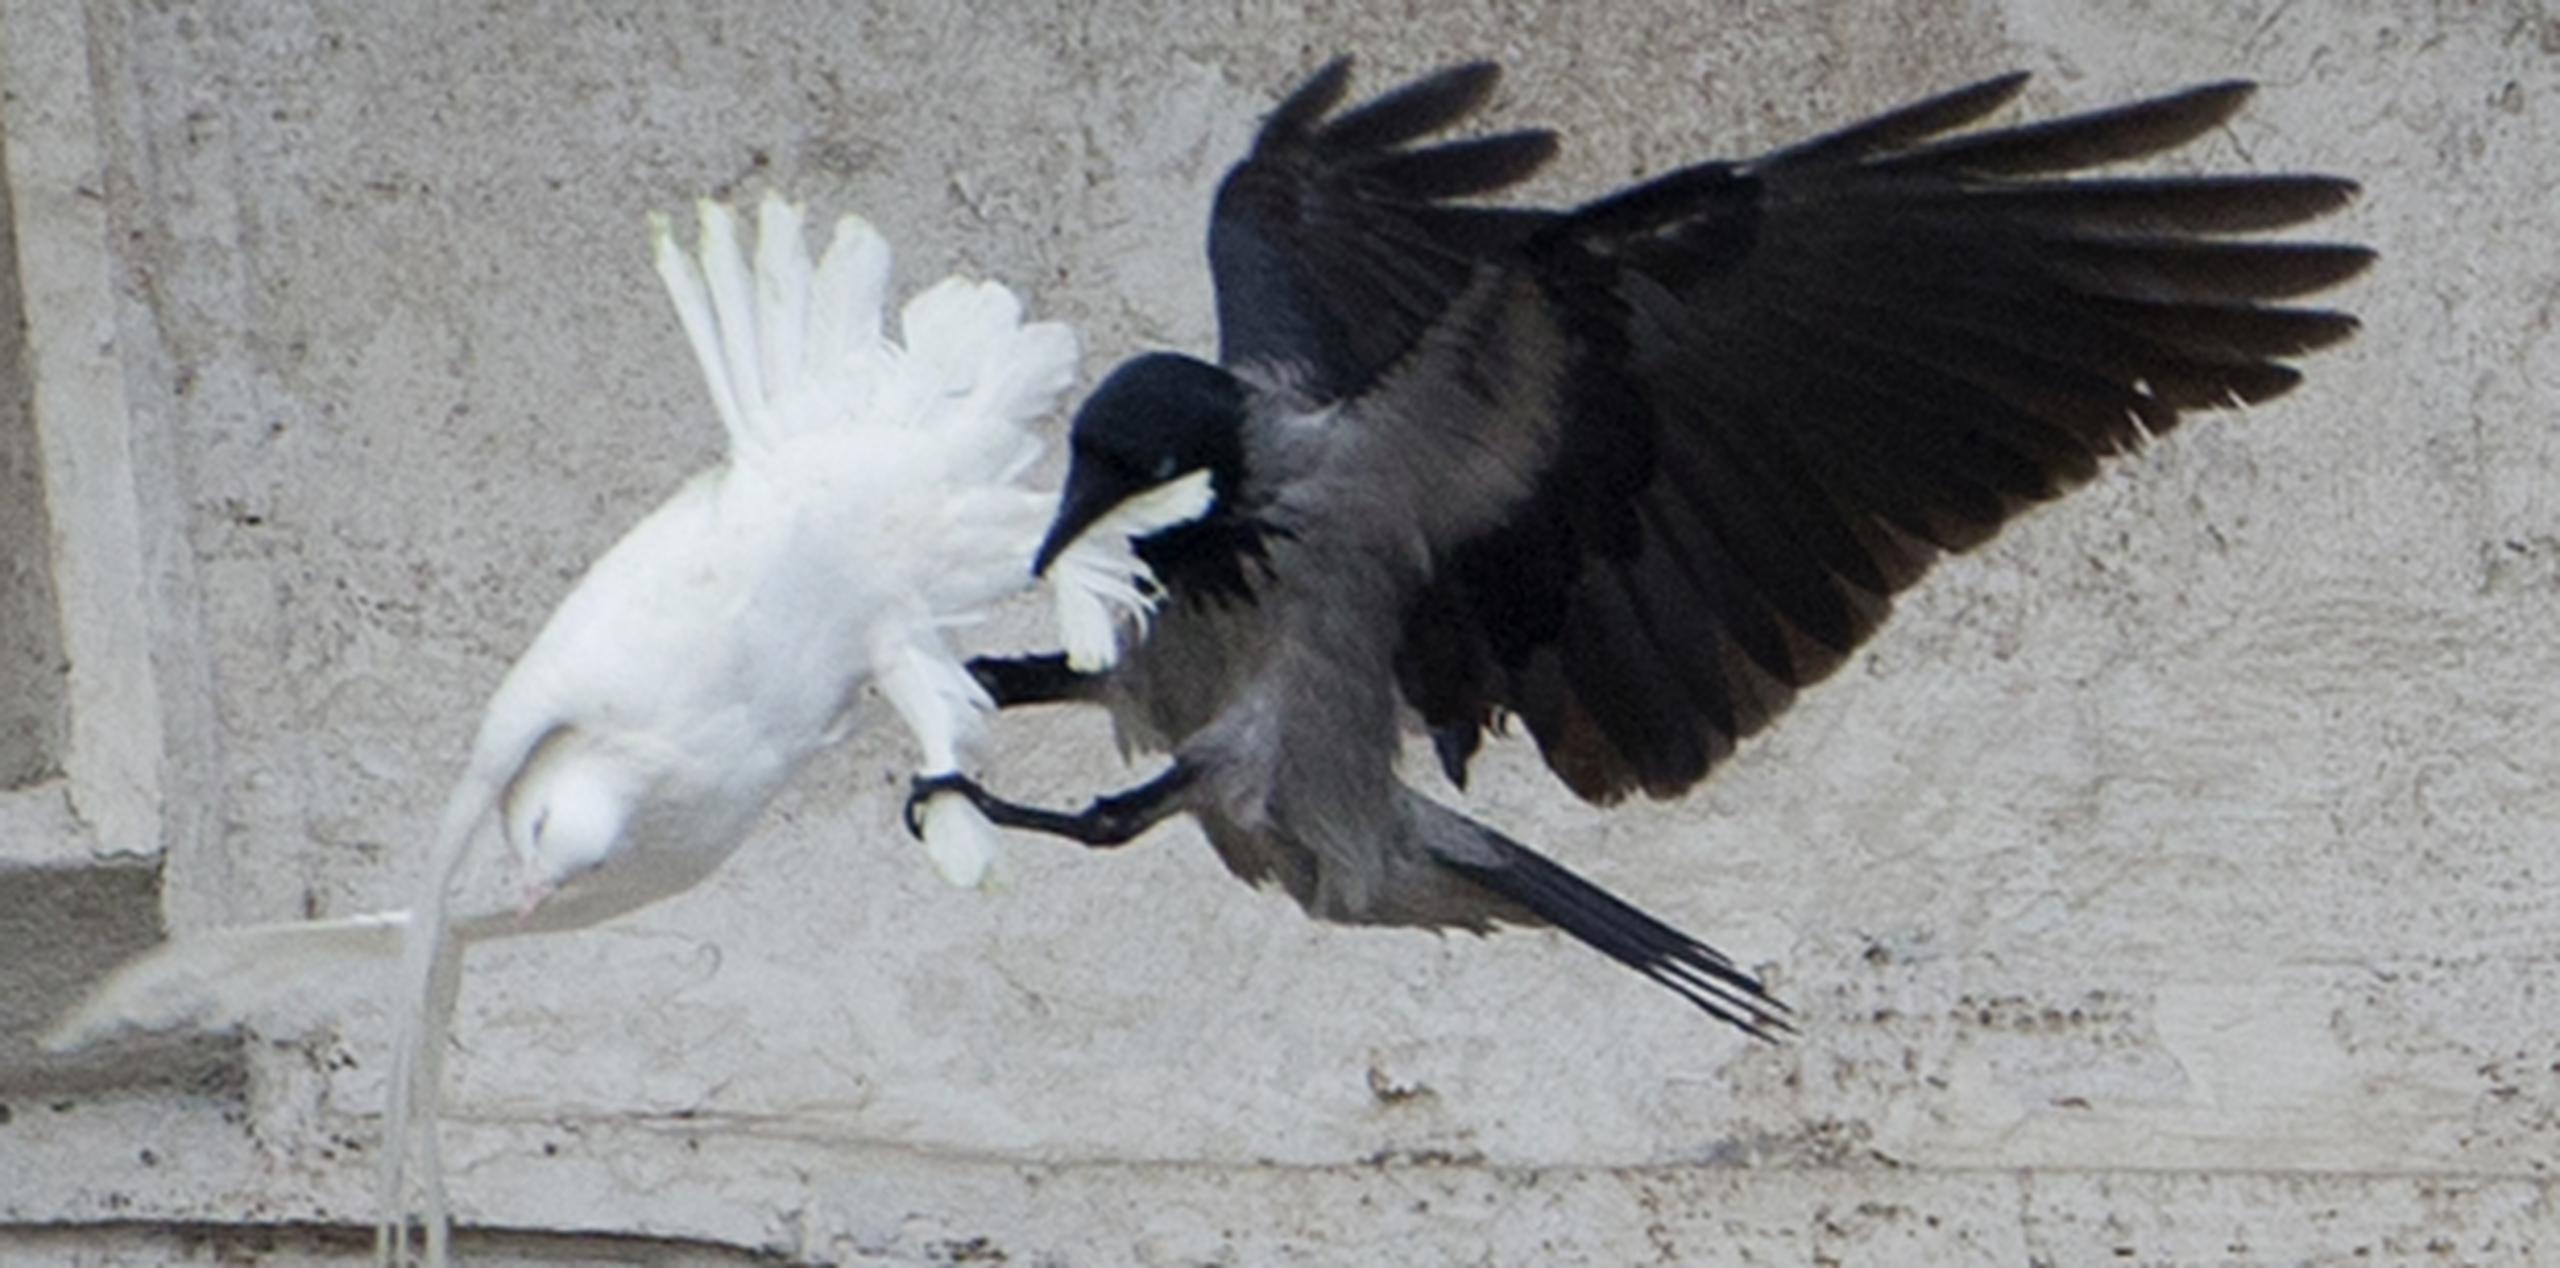 Se desconoce la suerte final de las palomas que lograron escapar volando. (AP/Gregorio Borgia)